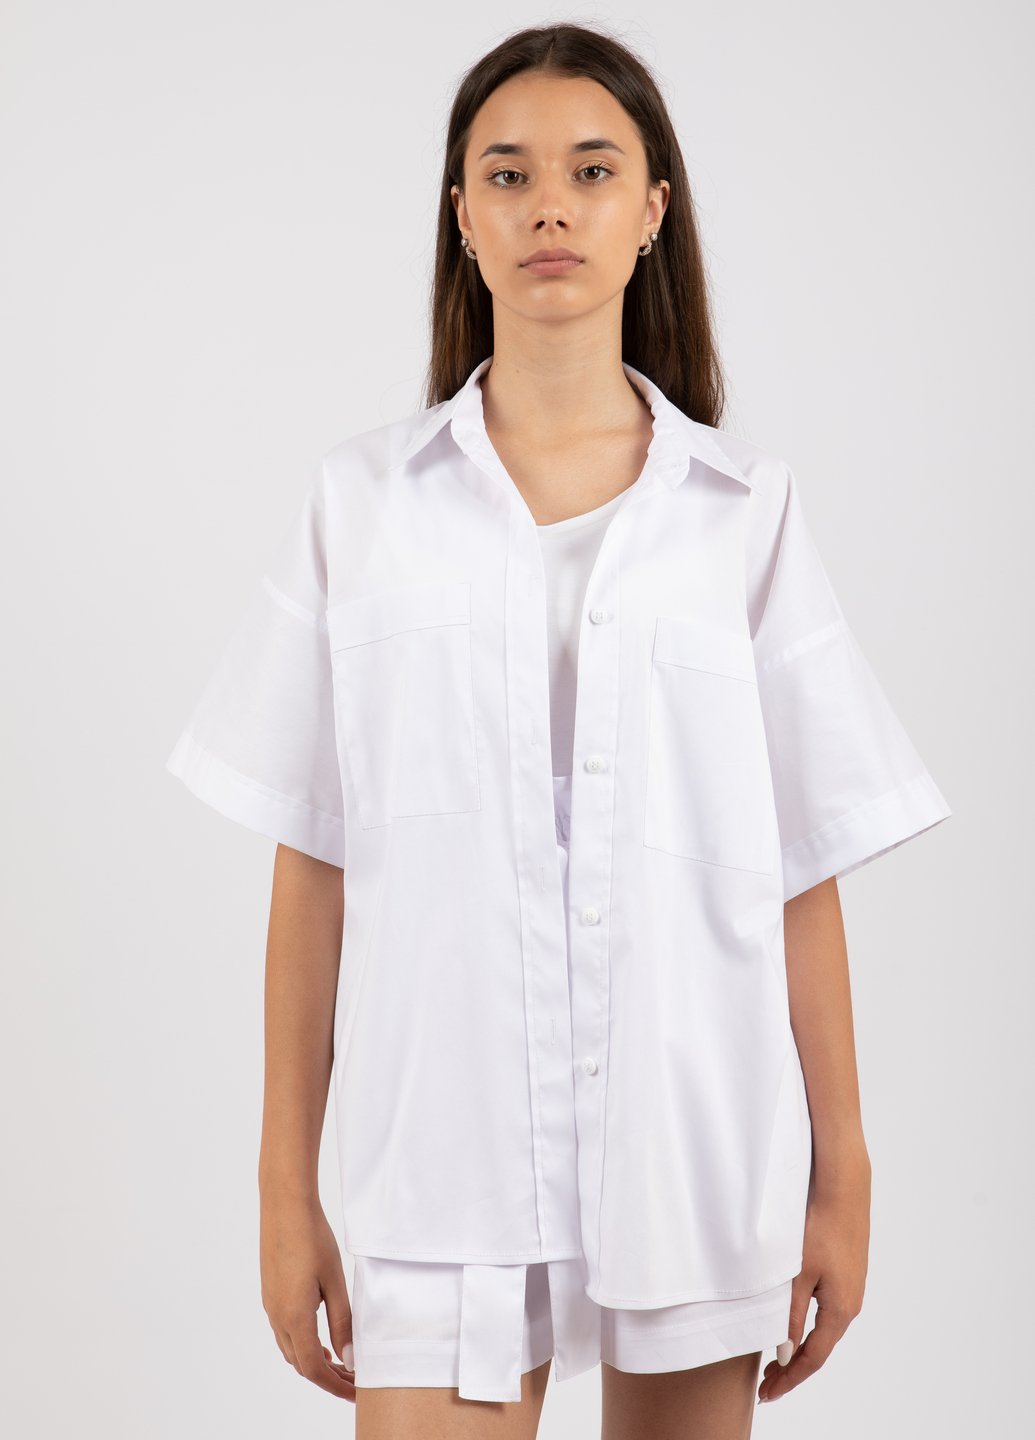 Купить Хлопковая оверсайз рубашка женская Merlini Борнео 200000019 - Белый, 42-44 в интернет-магазине